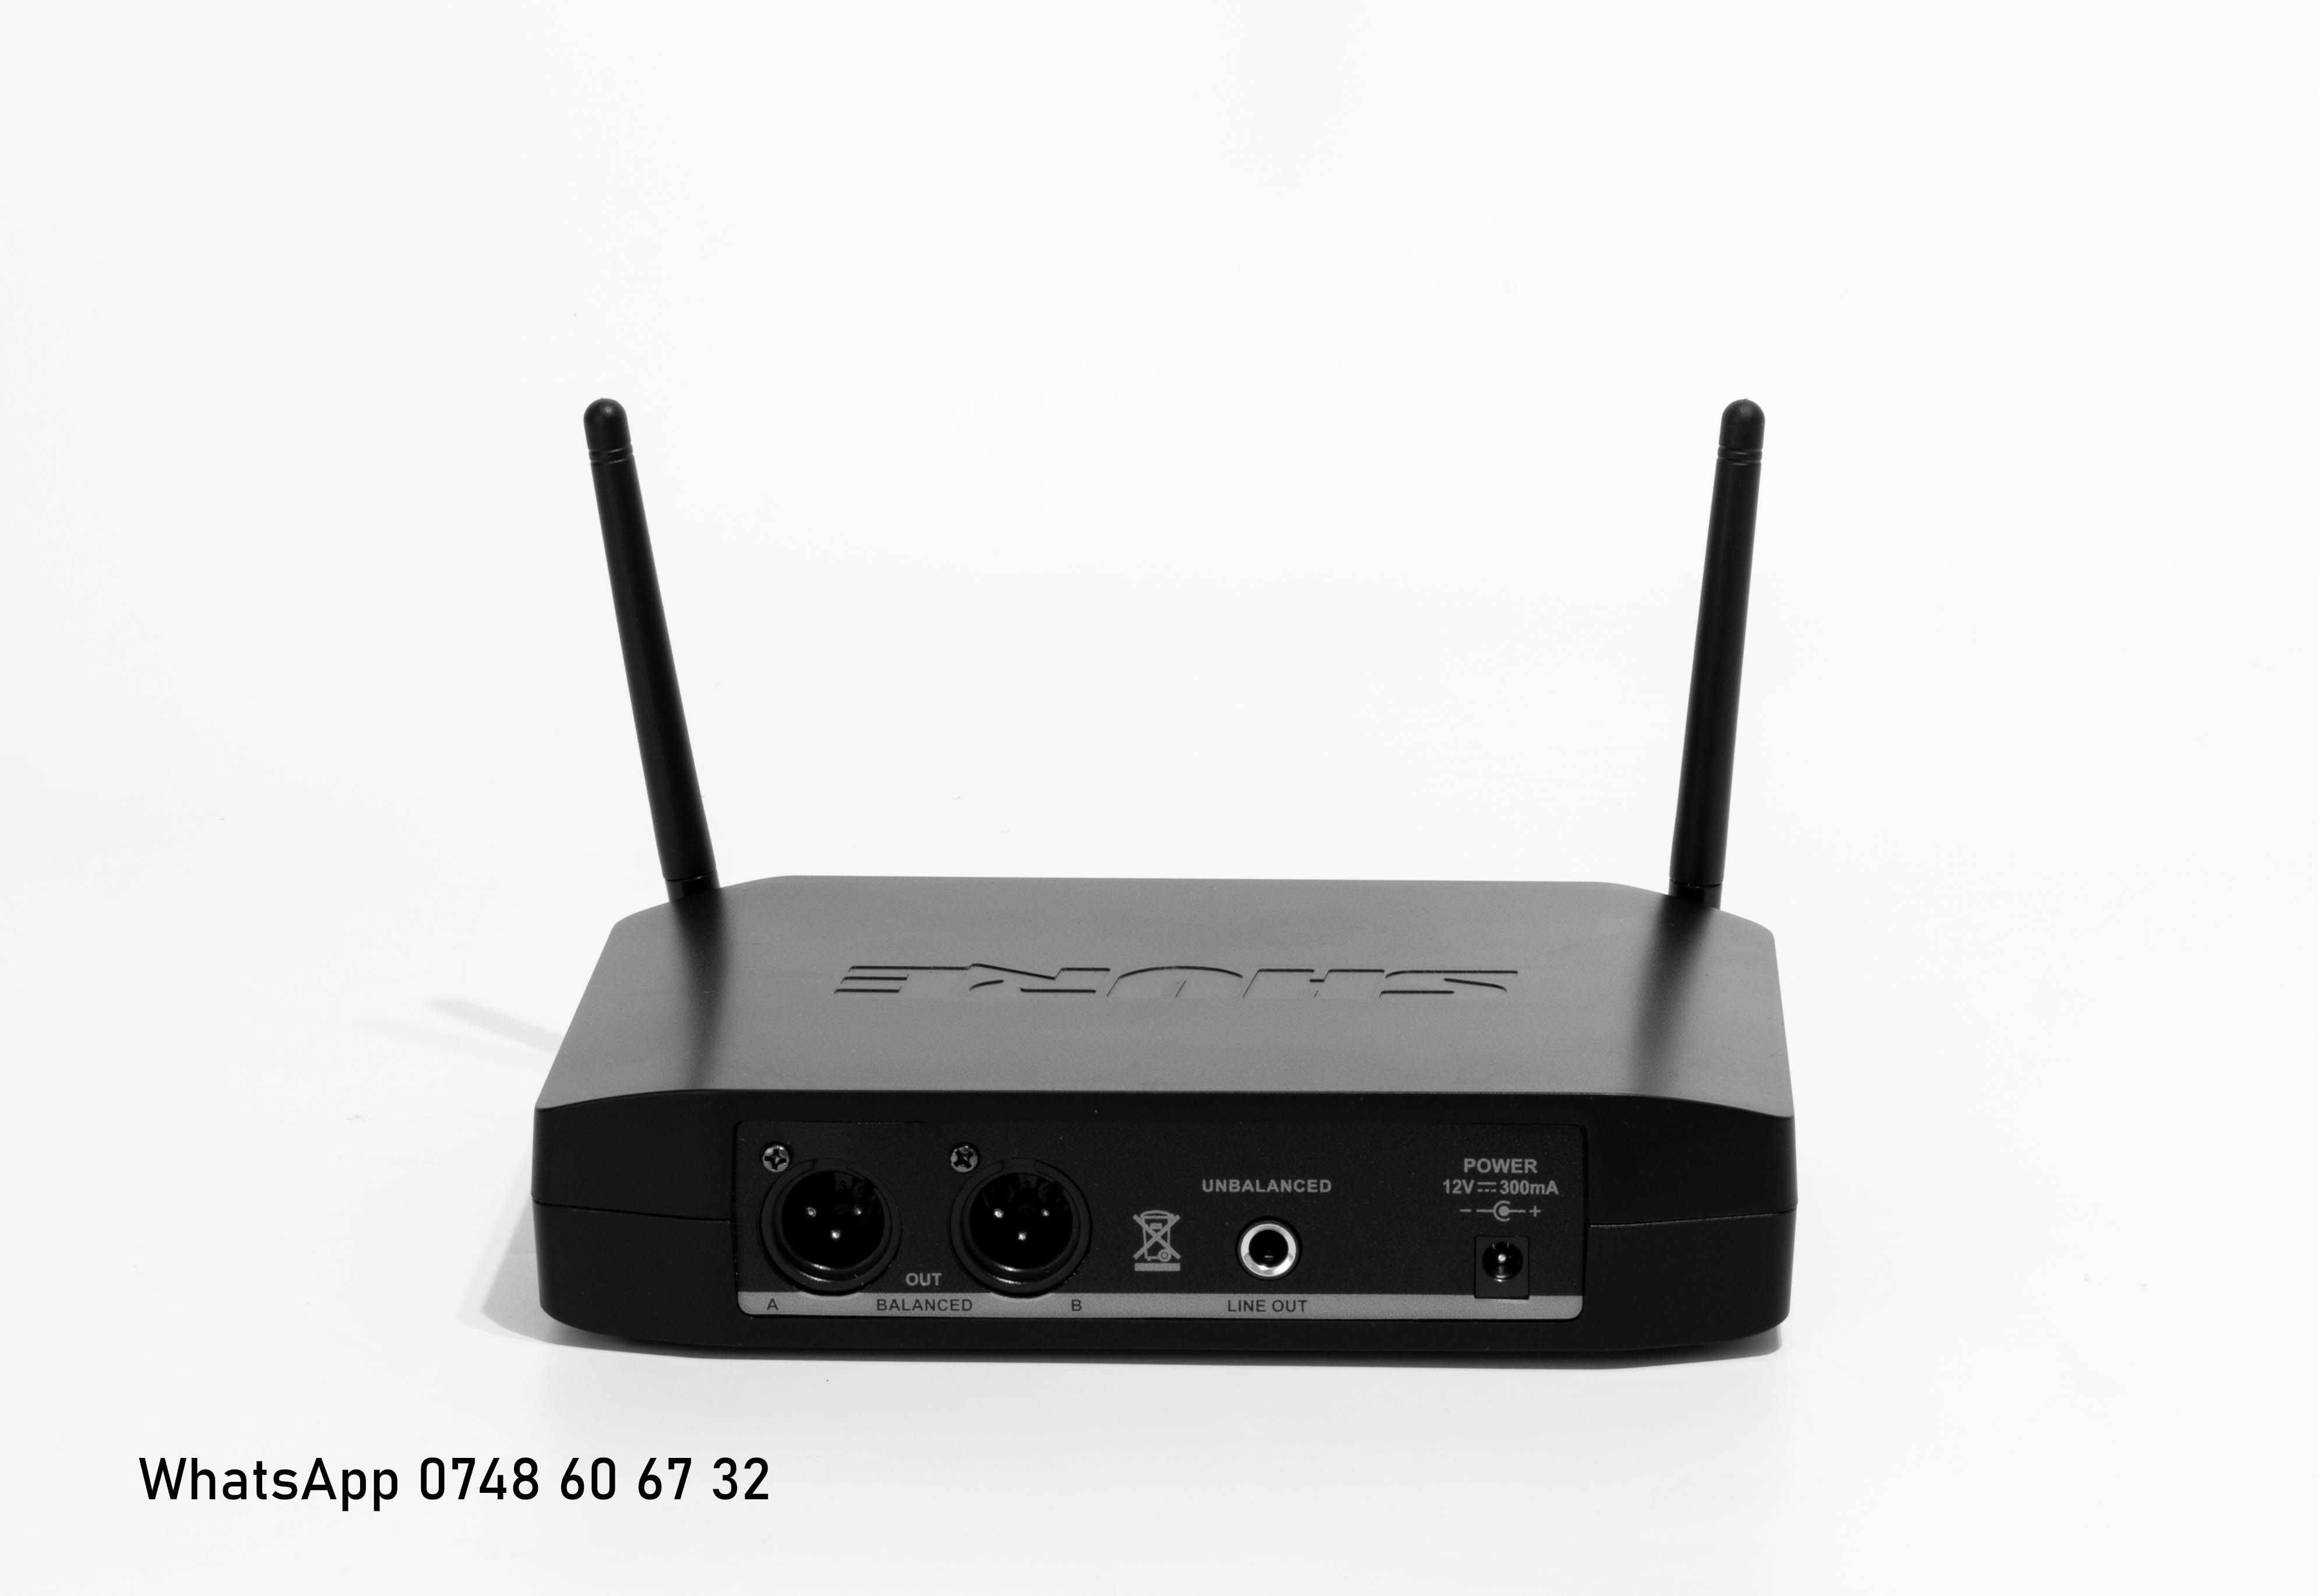 Wireless Shure GLXD4 Beta 58A doua microfoane+CASE (slx qlxd blx ulxd)